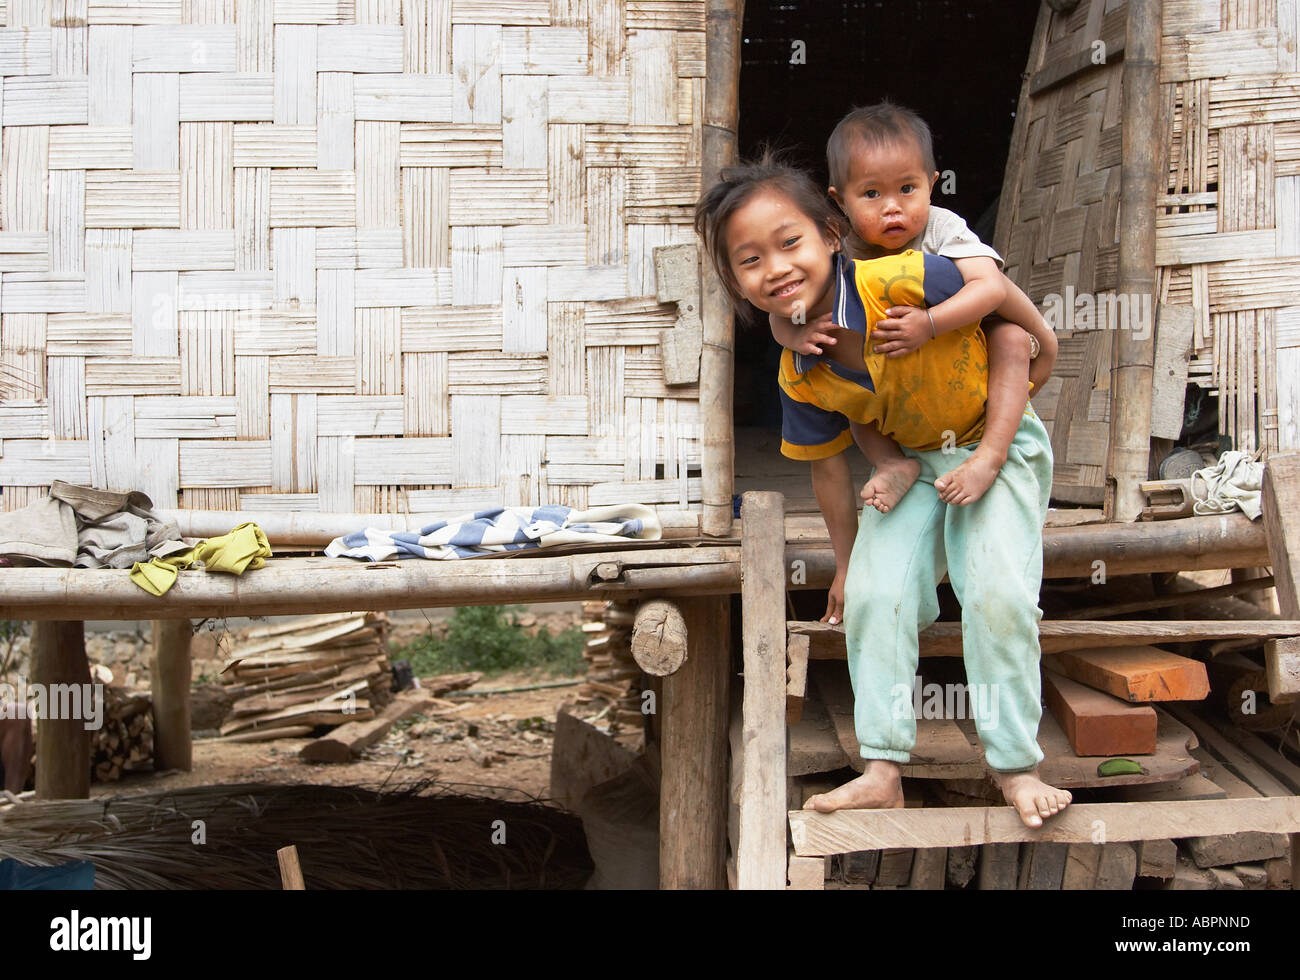 Children In Ban Aen Village, Luang Prabang Stock Photo